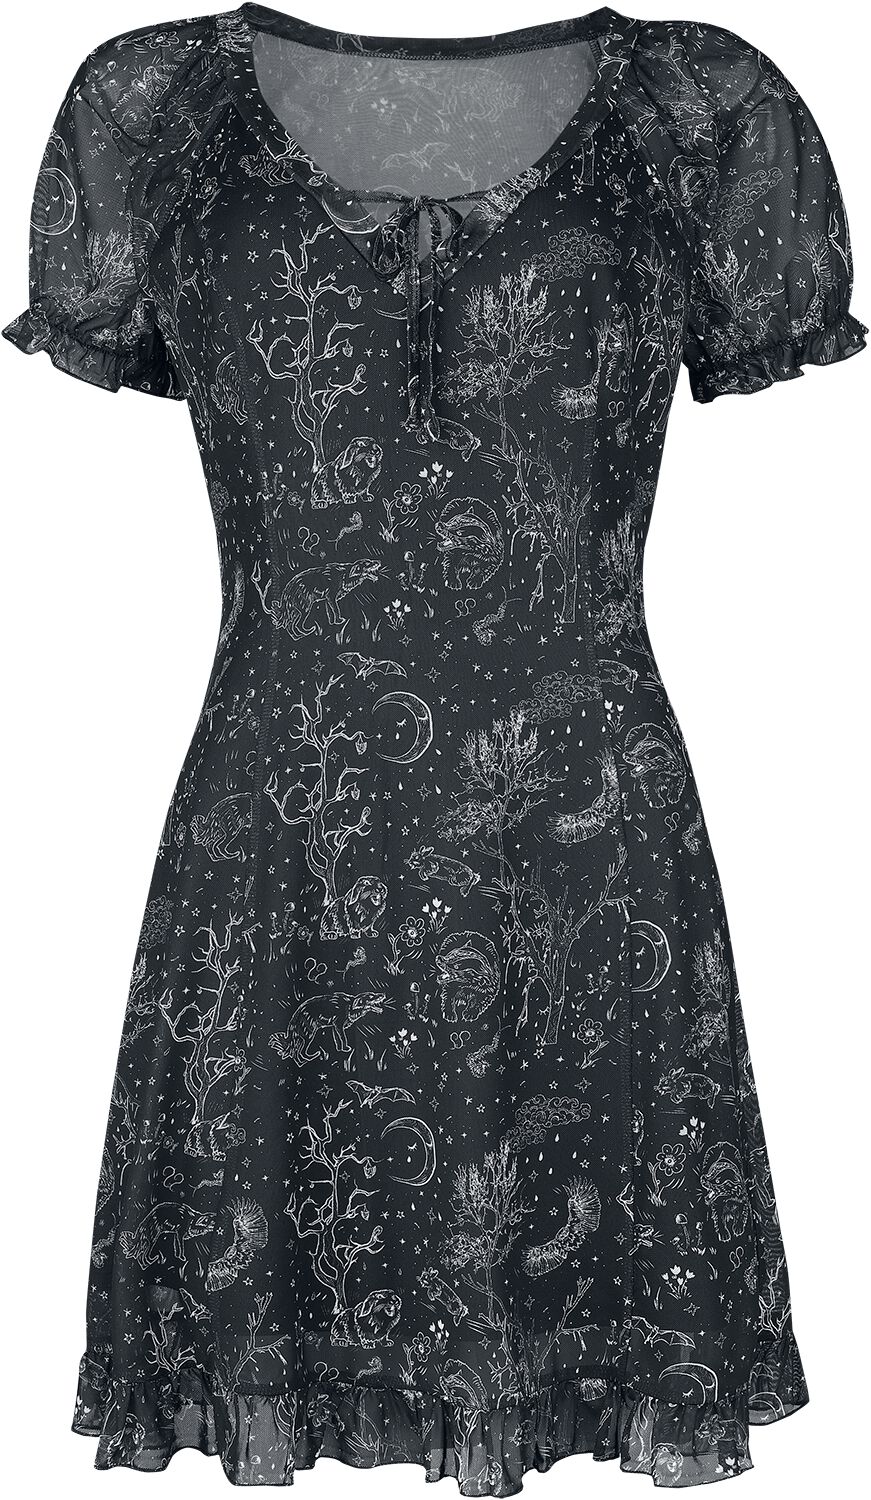 Jawbreaker - Gothic Kurzes Kleid - Night Forest Mesh Dress - XS bis XL - für Damen - Größe XS - schwarz/weiß